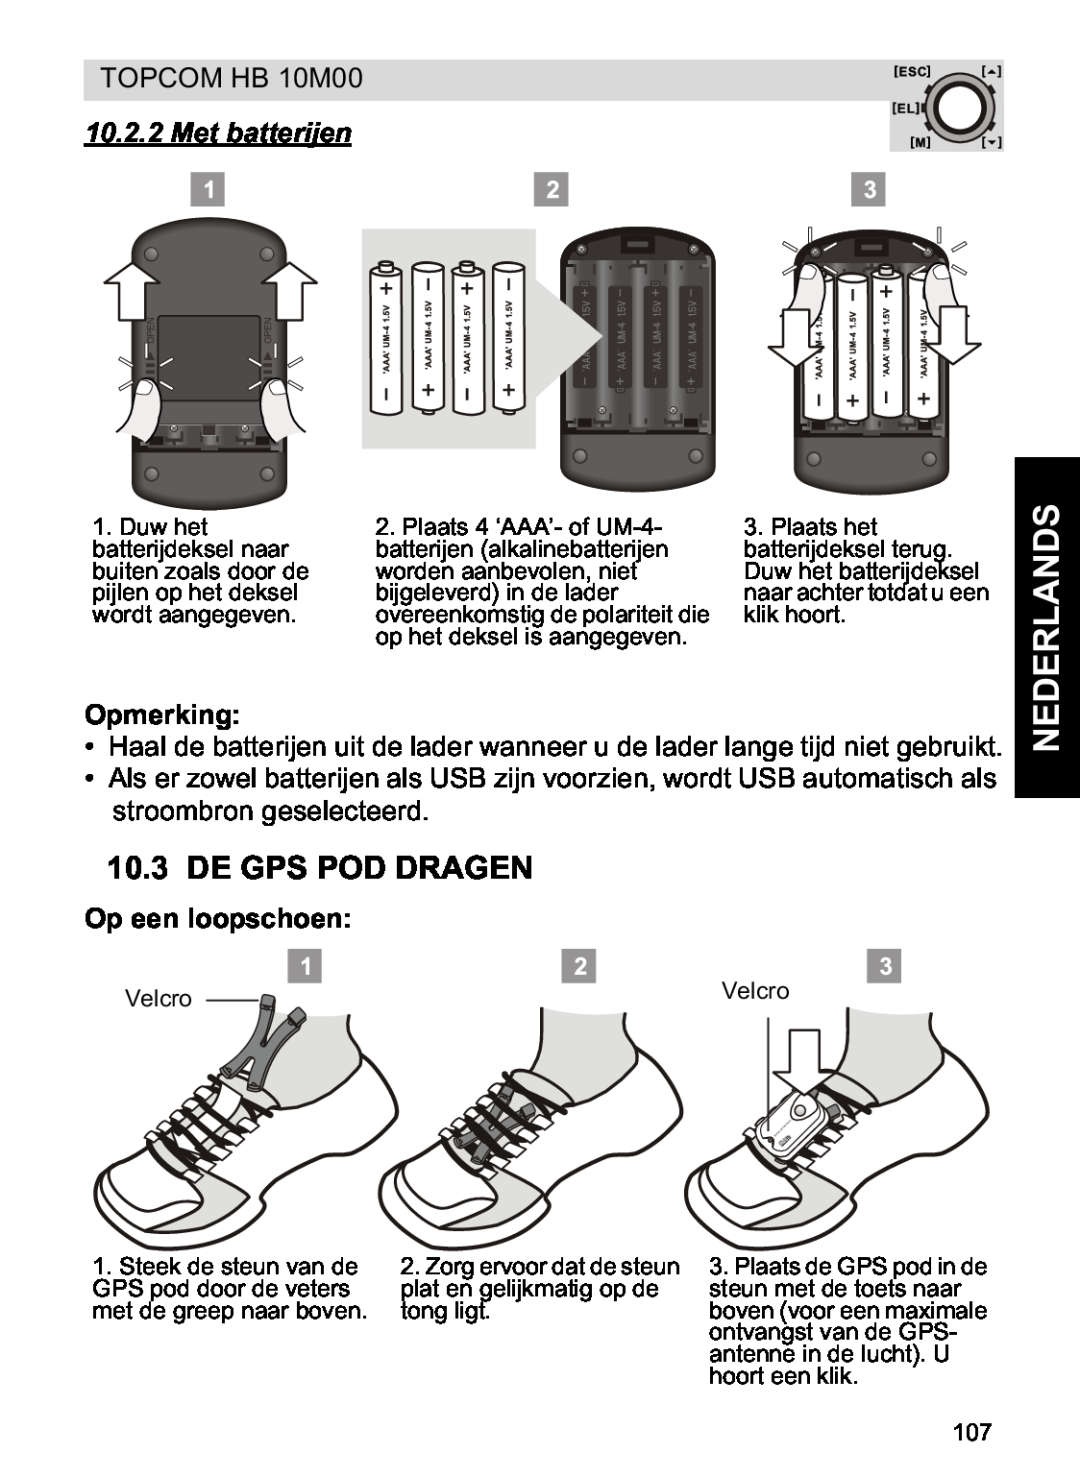 Topcom HB 10M00 manual De Gps Pod Dragen, Met batterijen, Op een loopschoen, Nederlands, Opmerking 